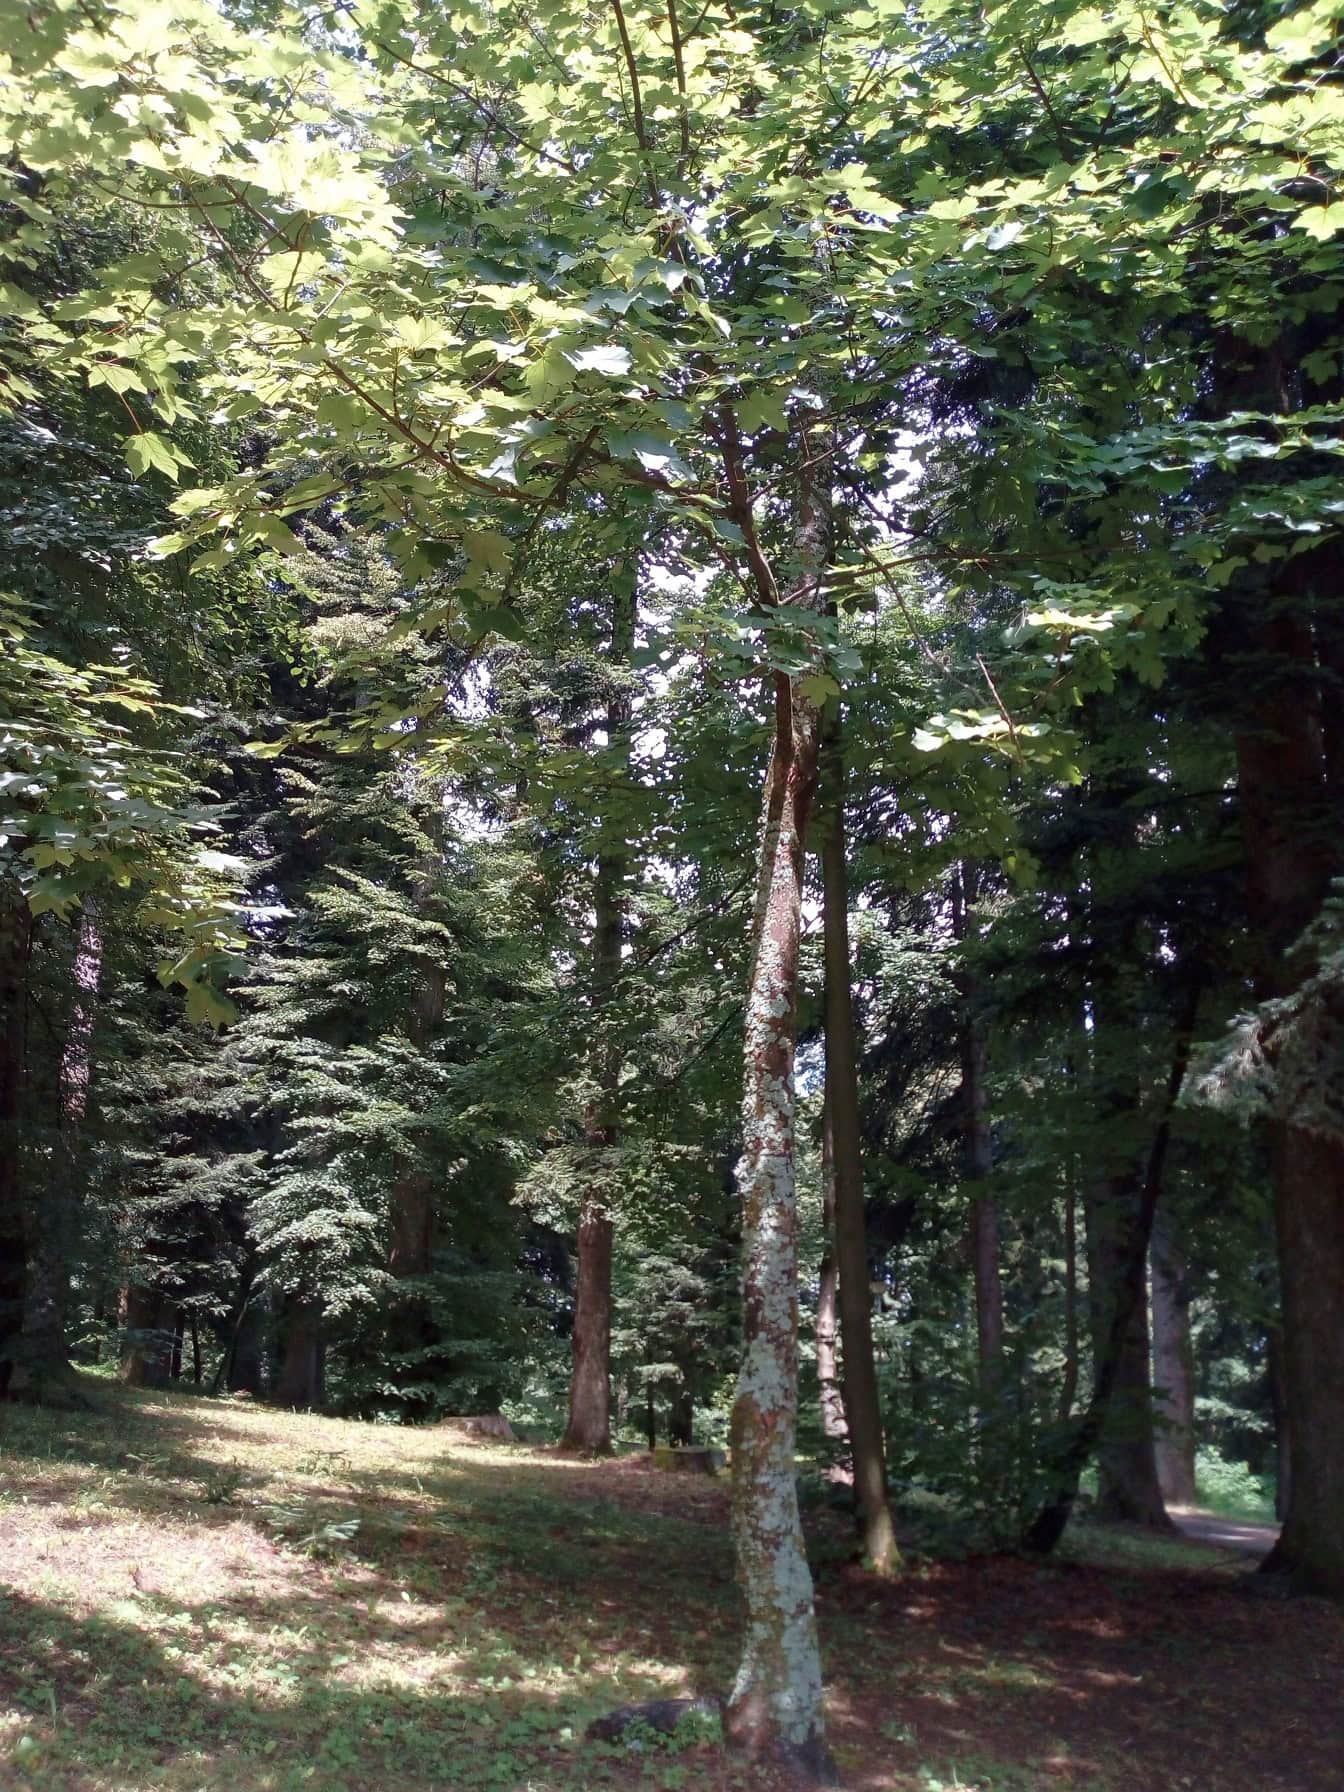 Ett ungt träd med lavar på barken i halvskugga av andra träd i skogen